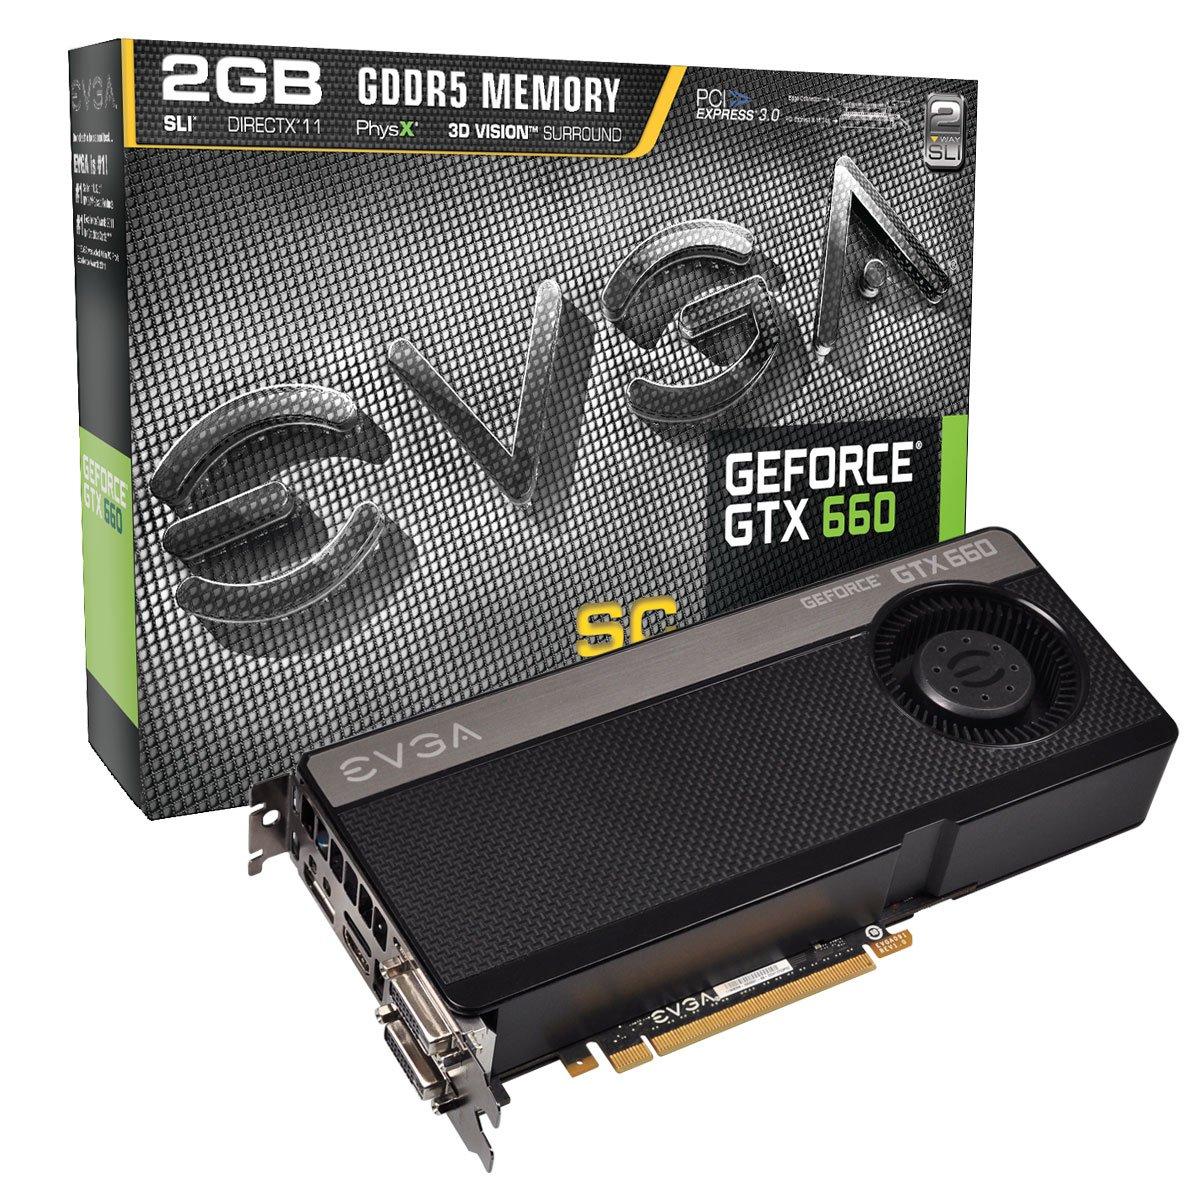 Geforce gtx 660 совместимость с процессором